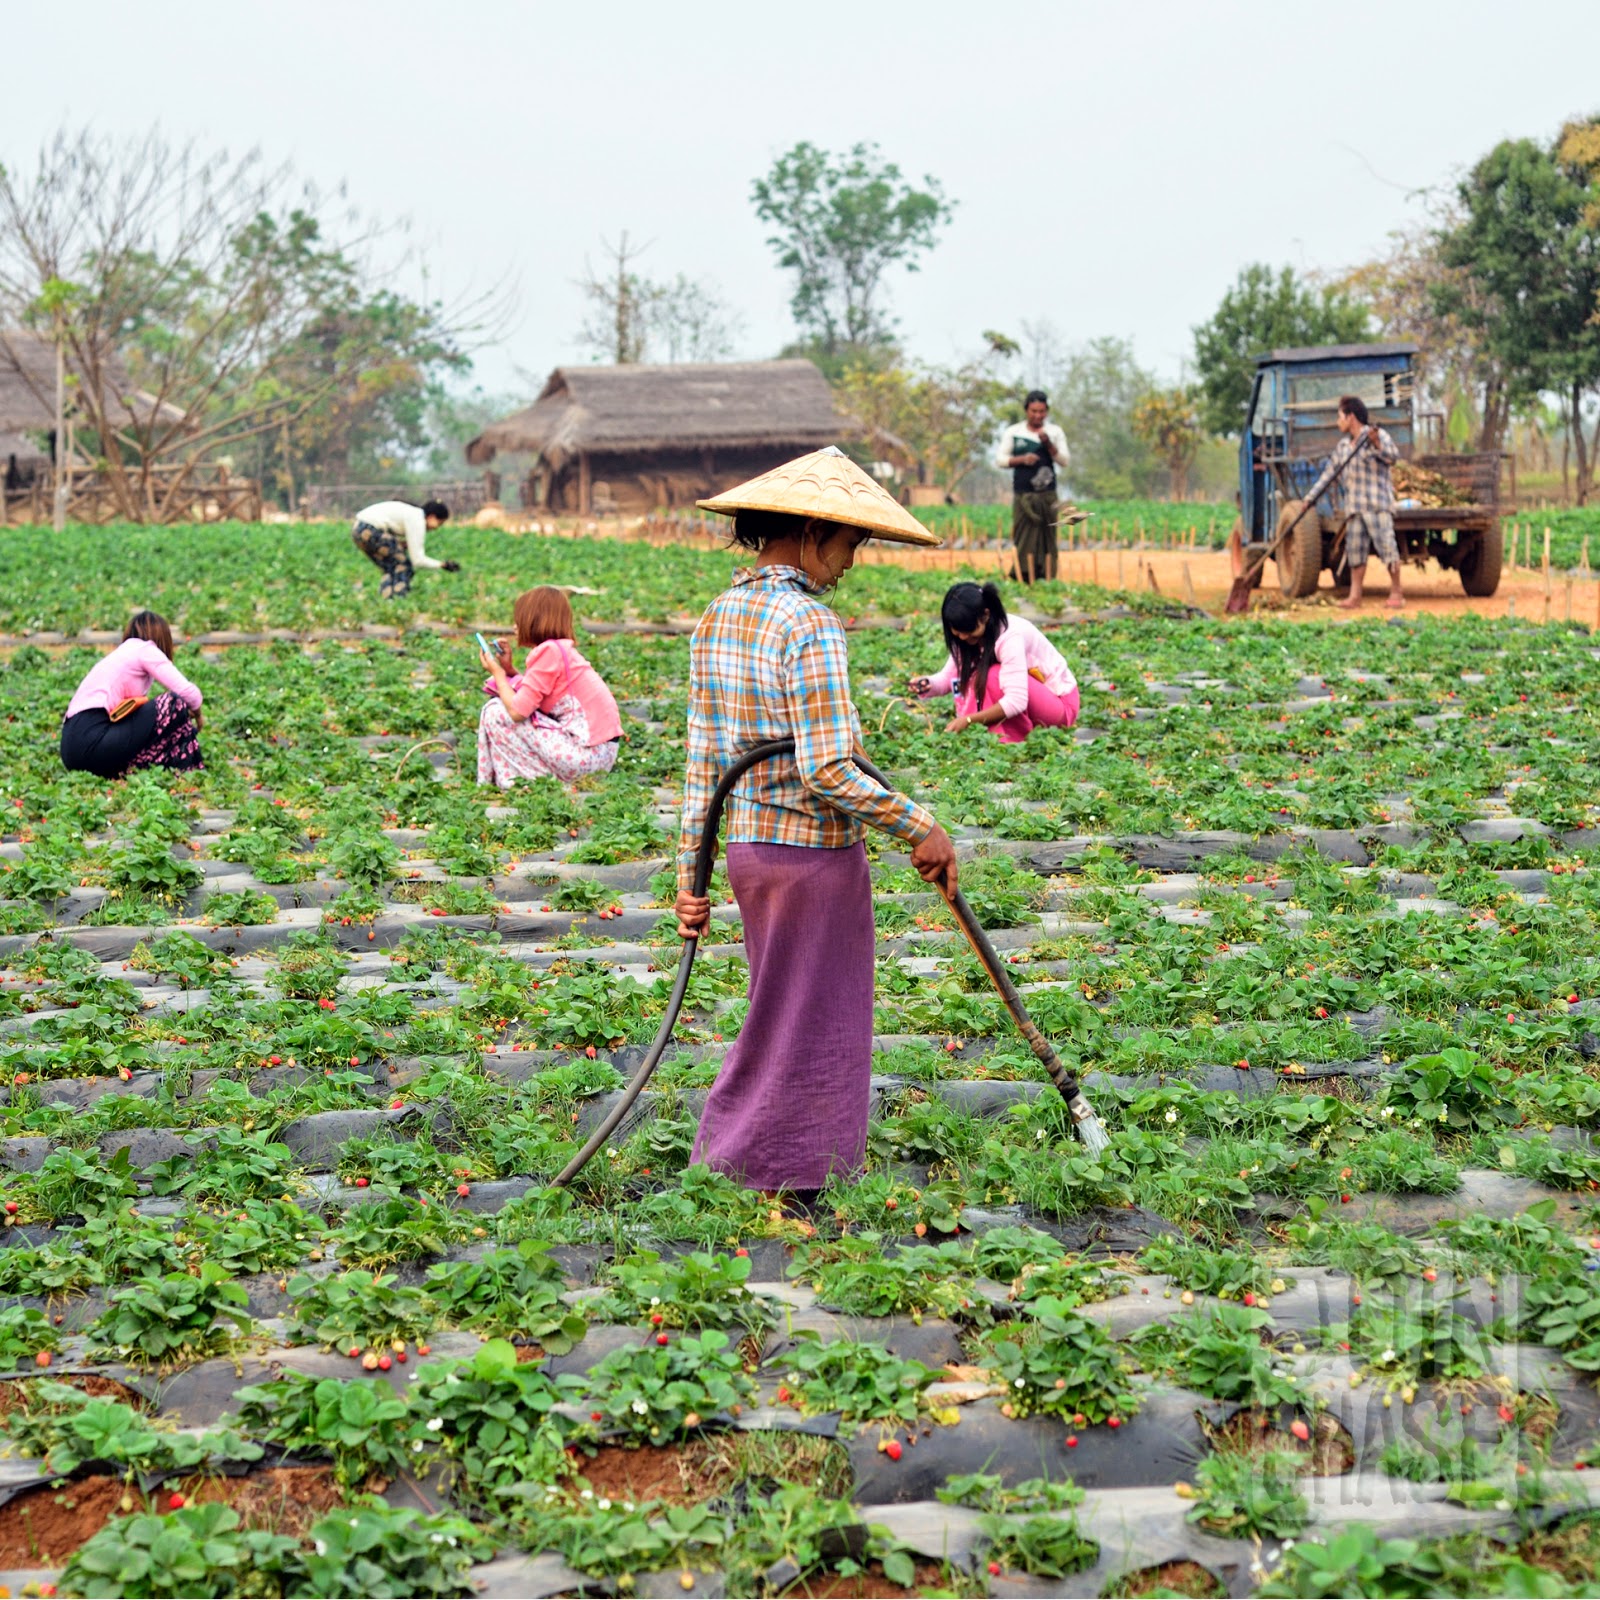 Workers on a strawberry farm near Pyin Oo Lwin, Myanmar.